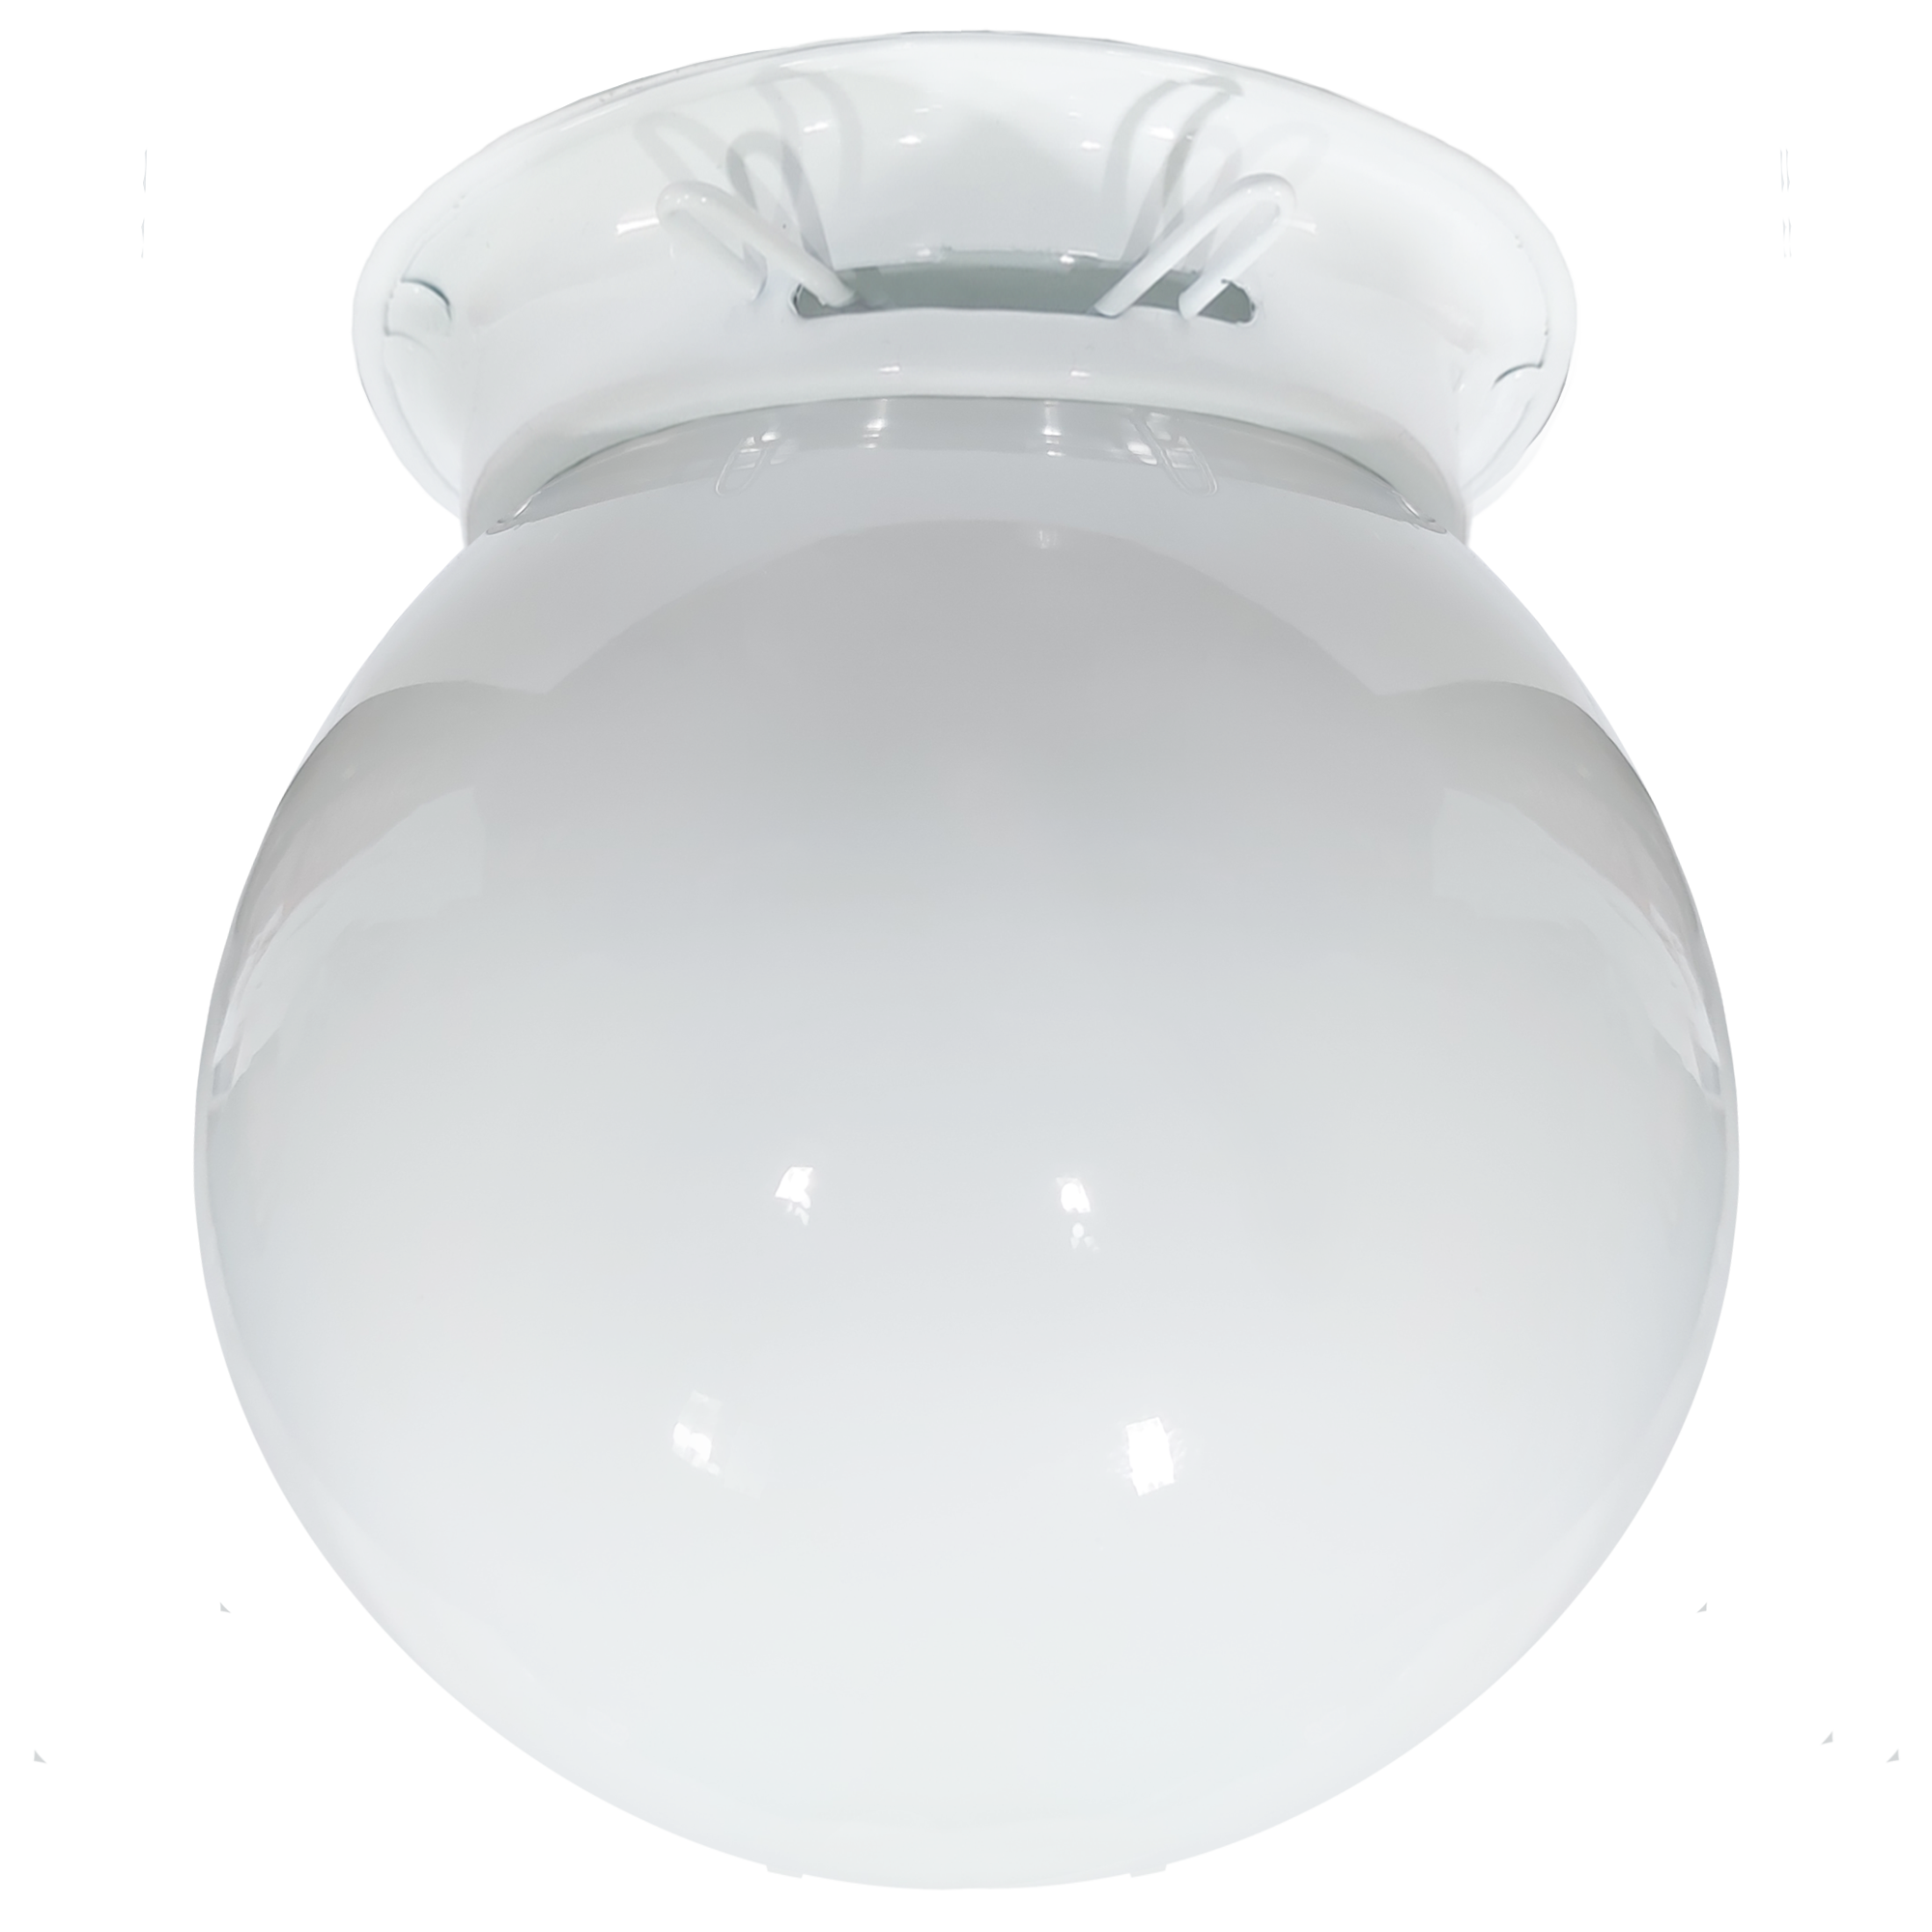 Plafon Aluminio Branco Com Esfera 10 X 20 Leitosa                                                   